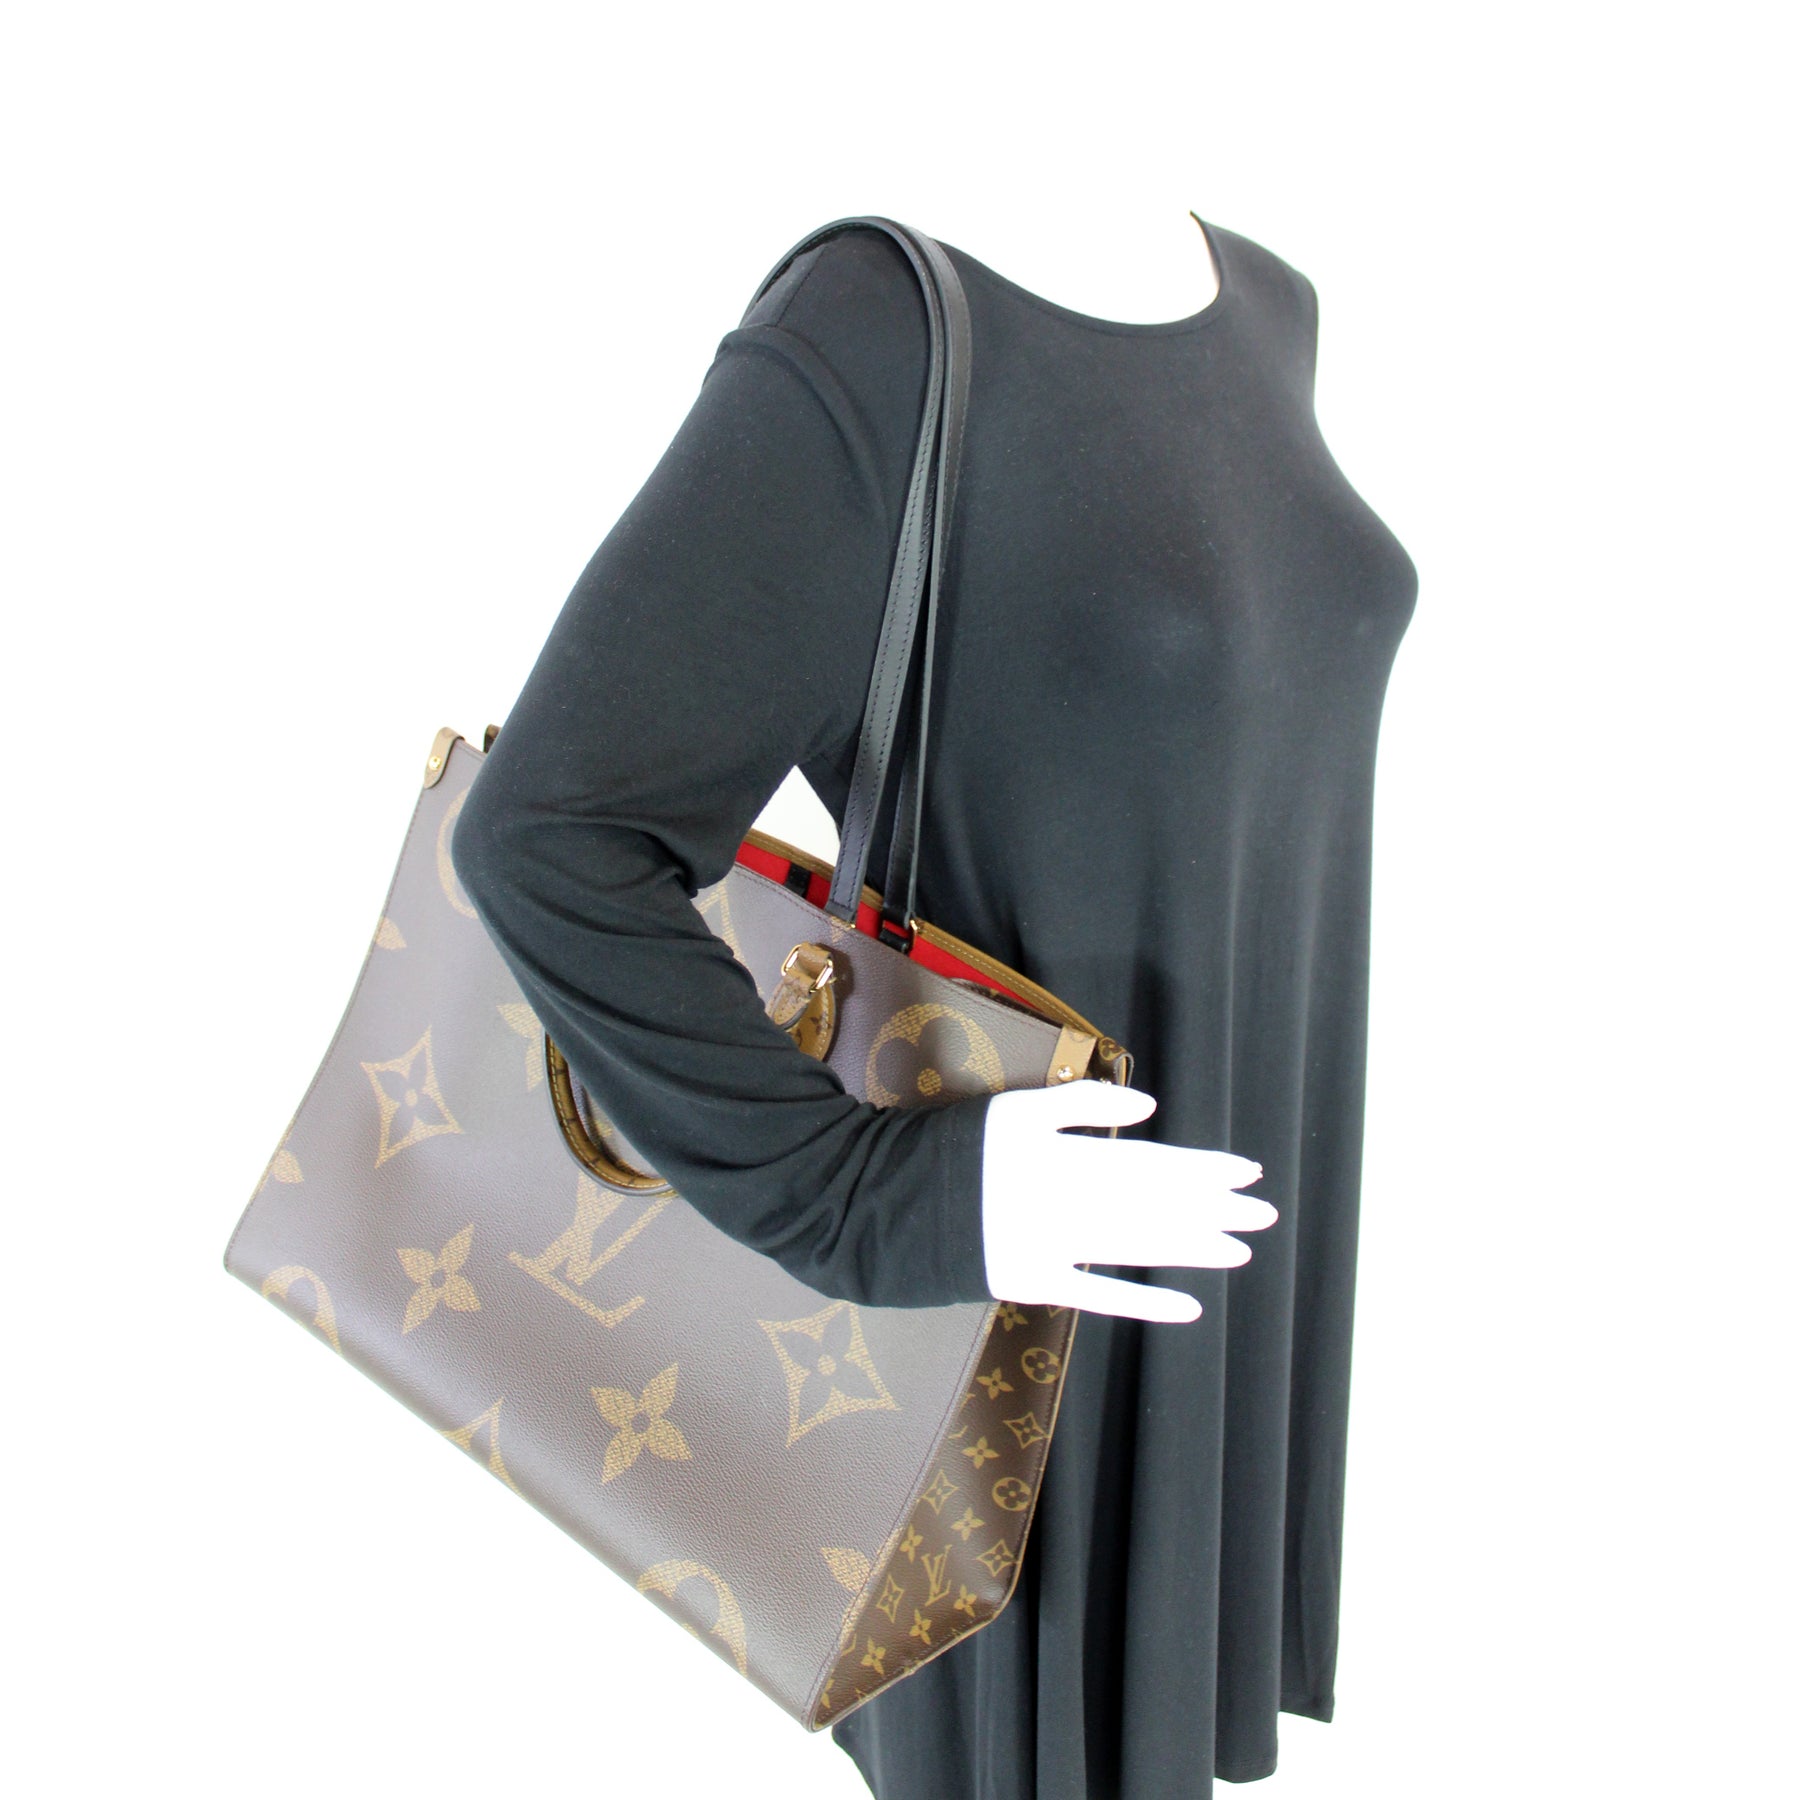 ONTHEGO GM By the Pool – Keeks Designer Handbags